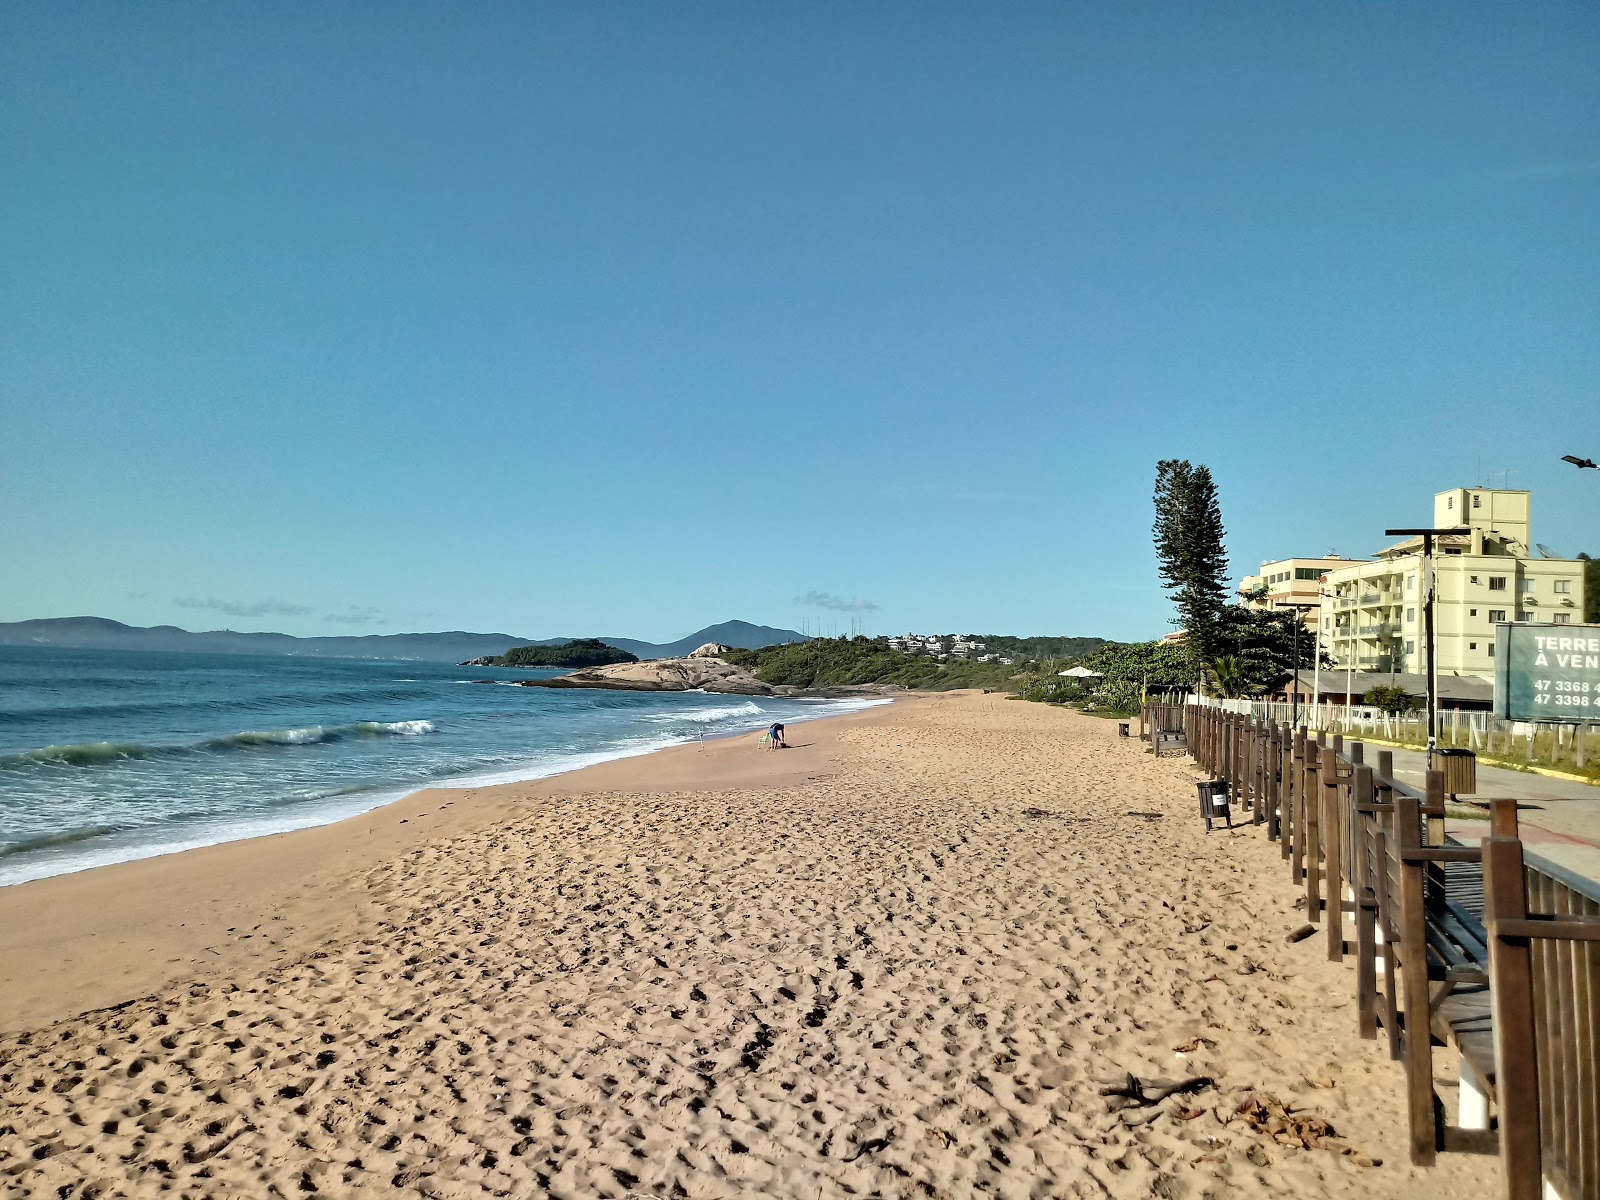 Praia da Ilhota'in fotoğrafı geniş plaj ile birlikte